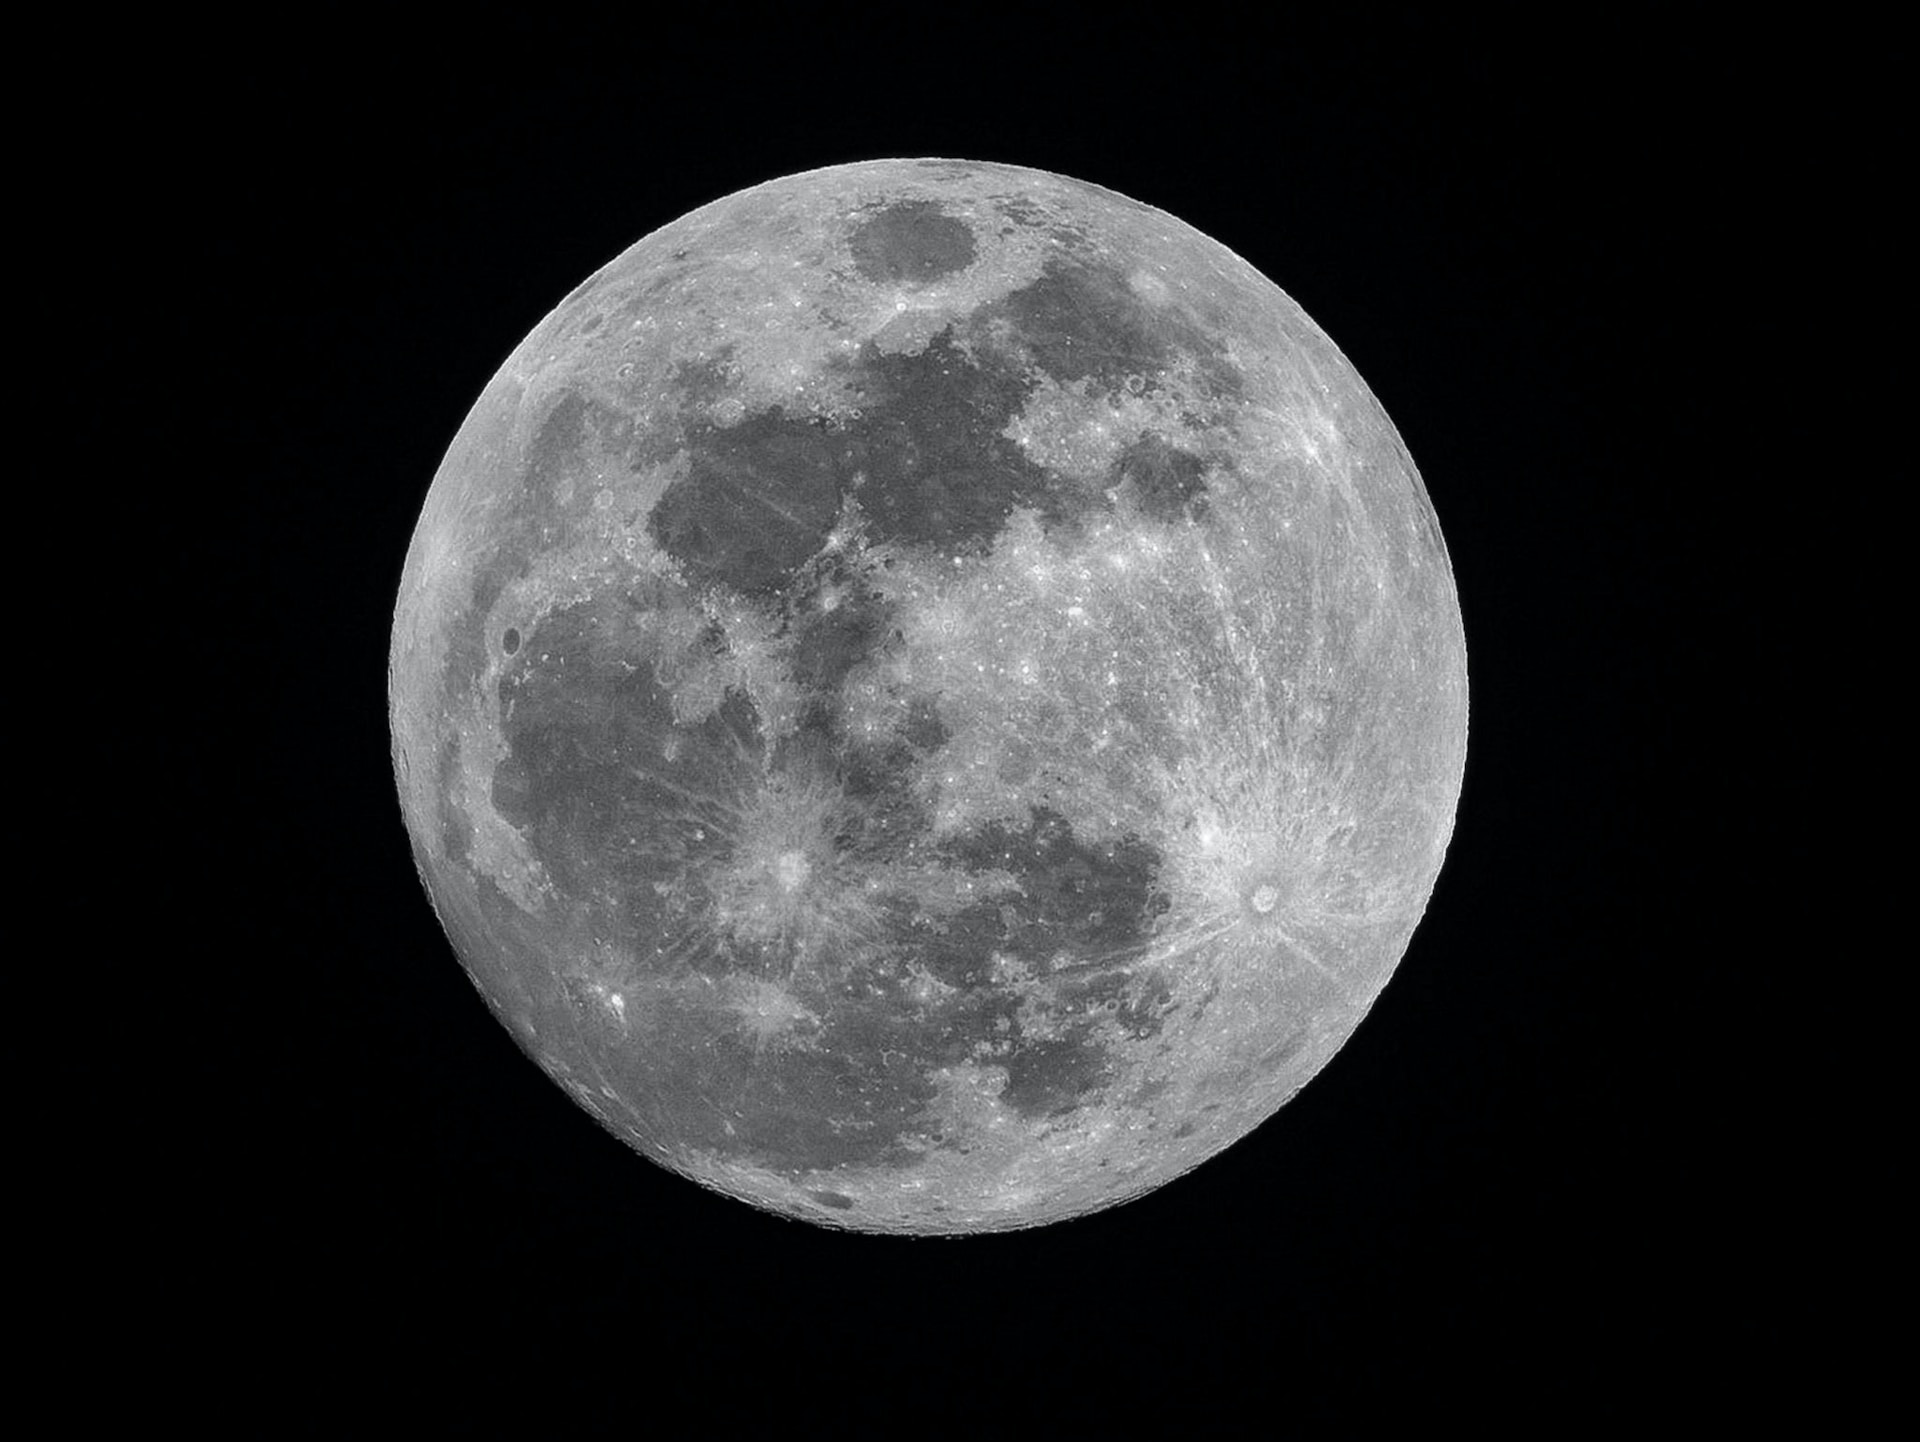 Zelfs de maan is nu onherroepelijk veranderd door ‘tijdperk van de mens’